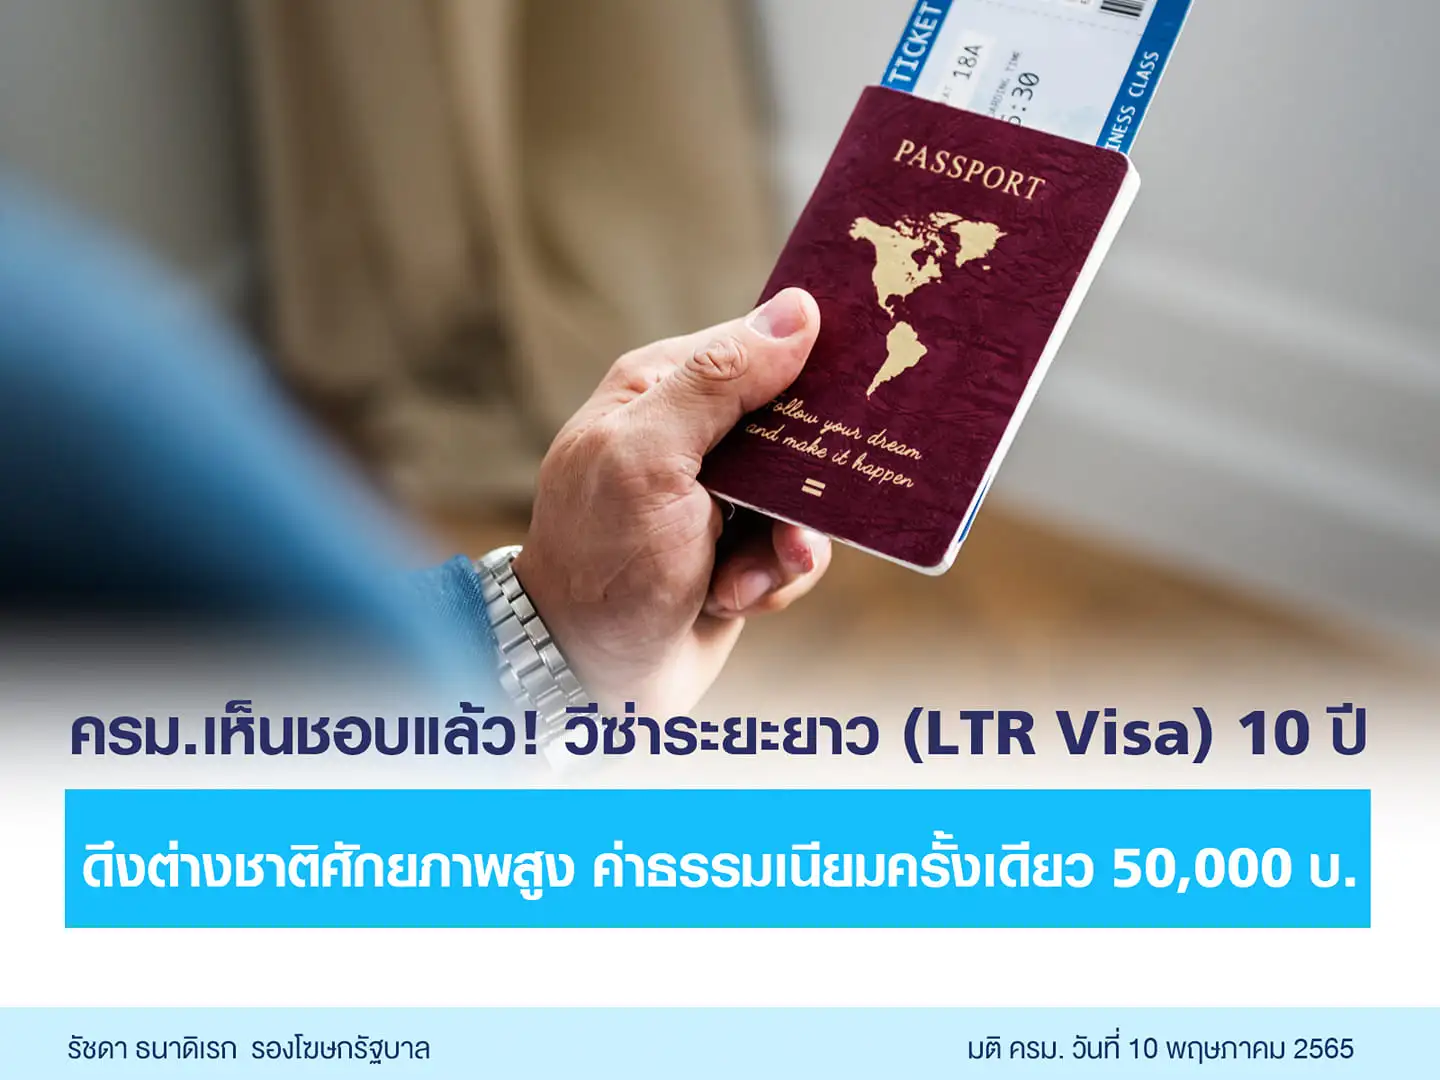 ปรับเกณฑ์วีซ่าระยะยาว (LTR Visa) 10 ปี ตั้งเป้าดึงดูดชาวต่างชาติ-ผู้เชี่ยวชาญ 1 ล้านคน HealthServ.net